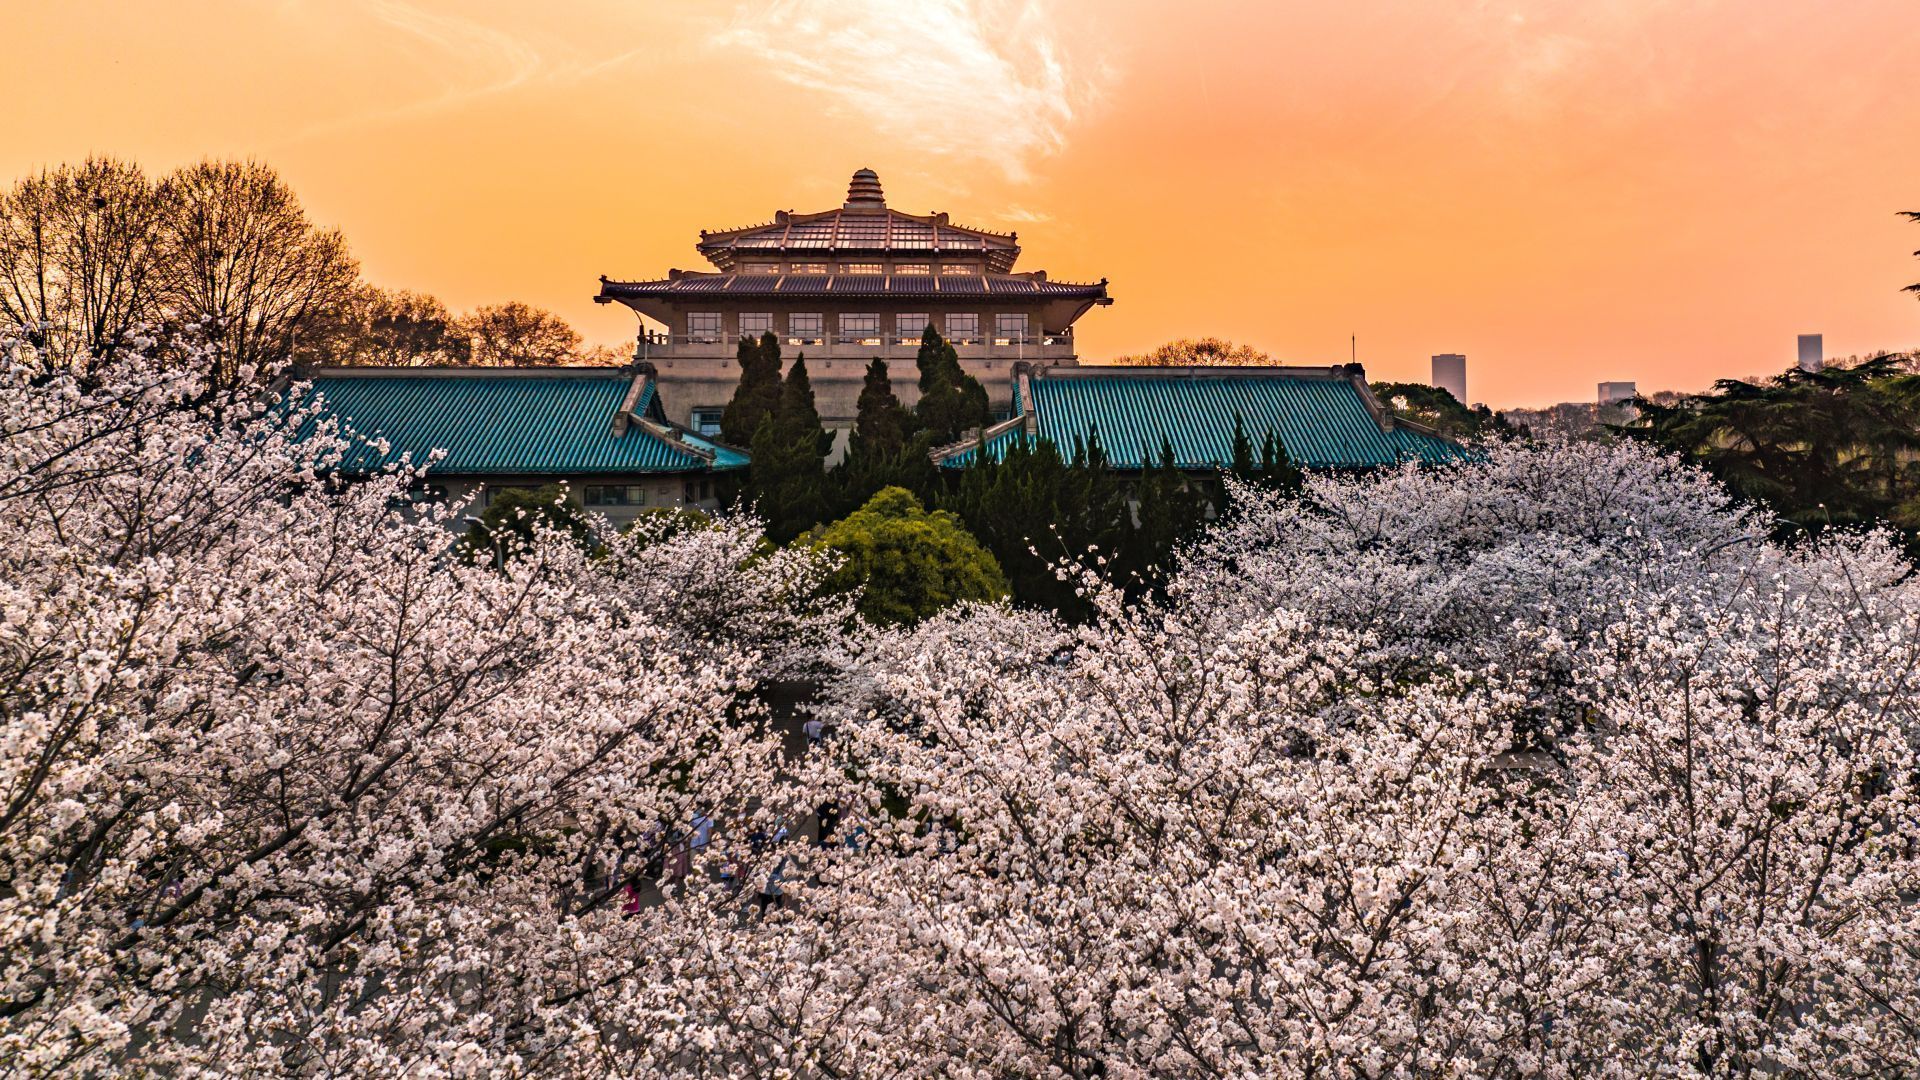 与此同时,武汉大学决定免费开放网络云赏樱通道,展示樱花盛开美景和